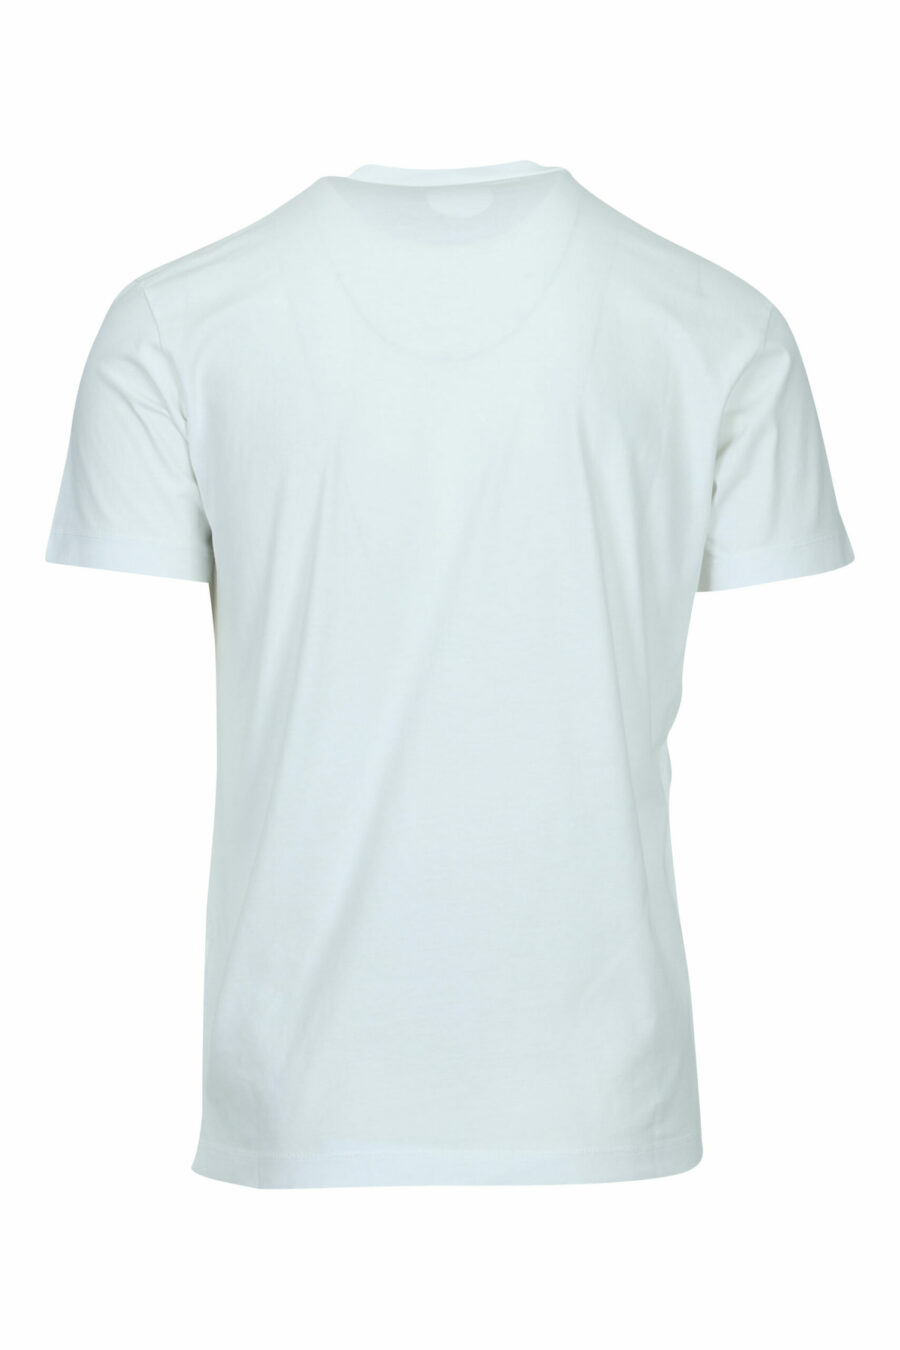 Weißes T-Shirt mit gefaltetem "milano"-Logo - 8054148570989 1 skaliert